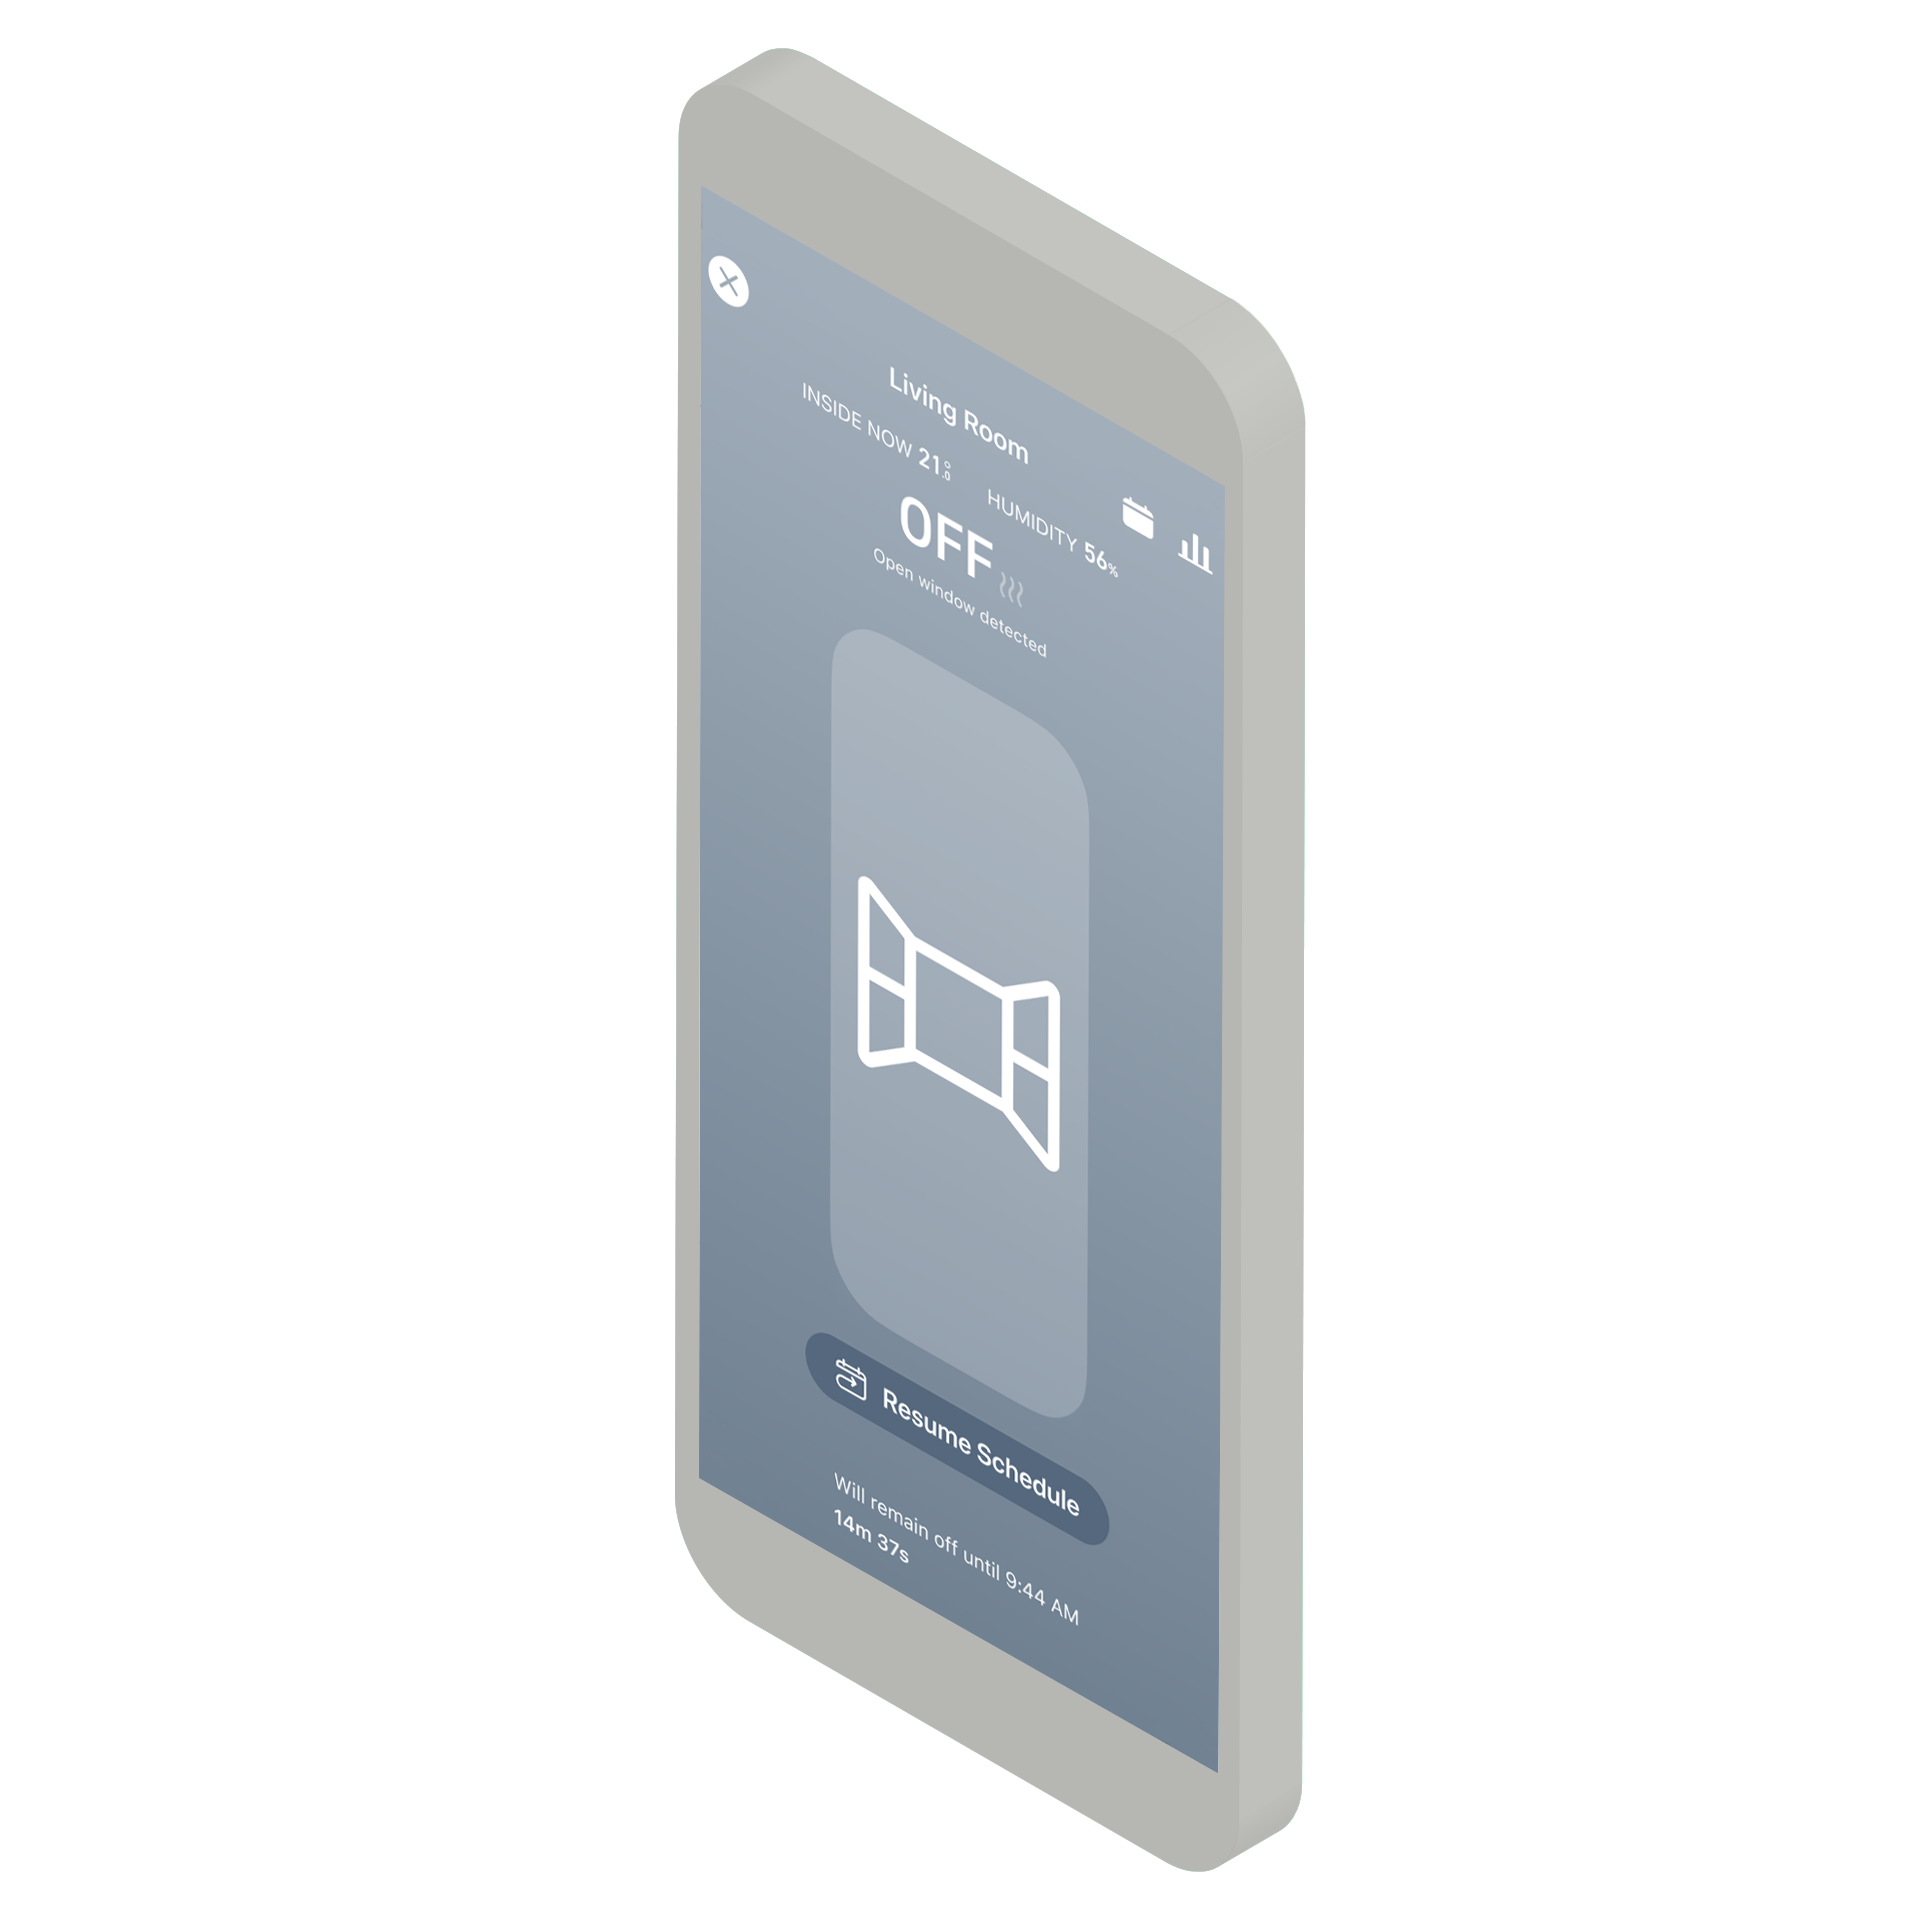 Schematische Darstellung Tado App für smartes Heizen 02